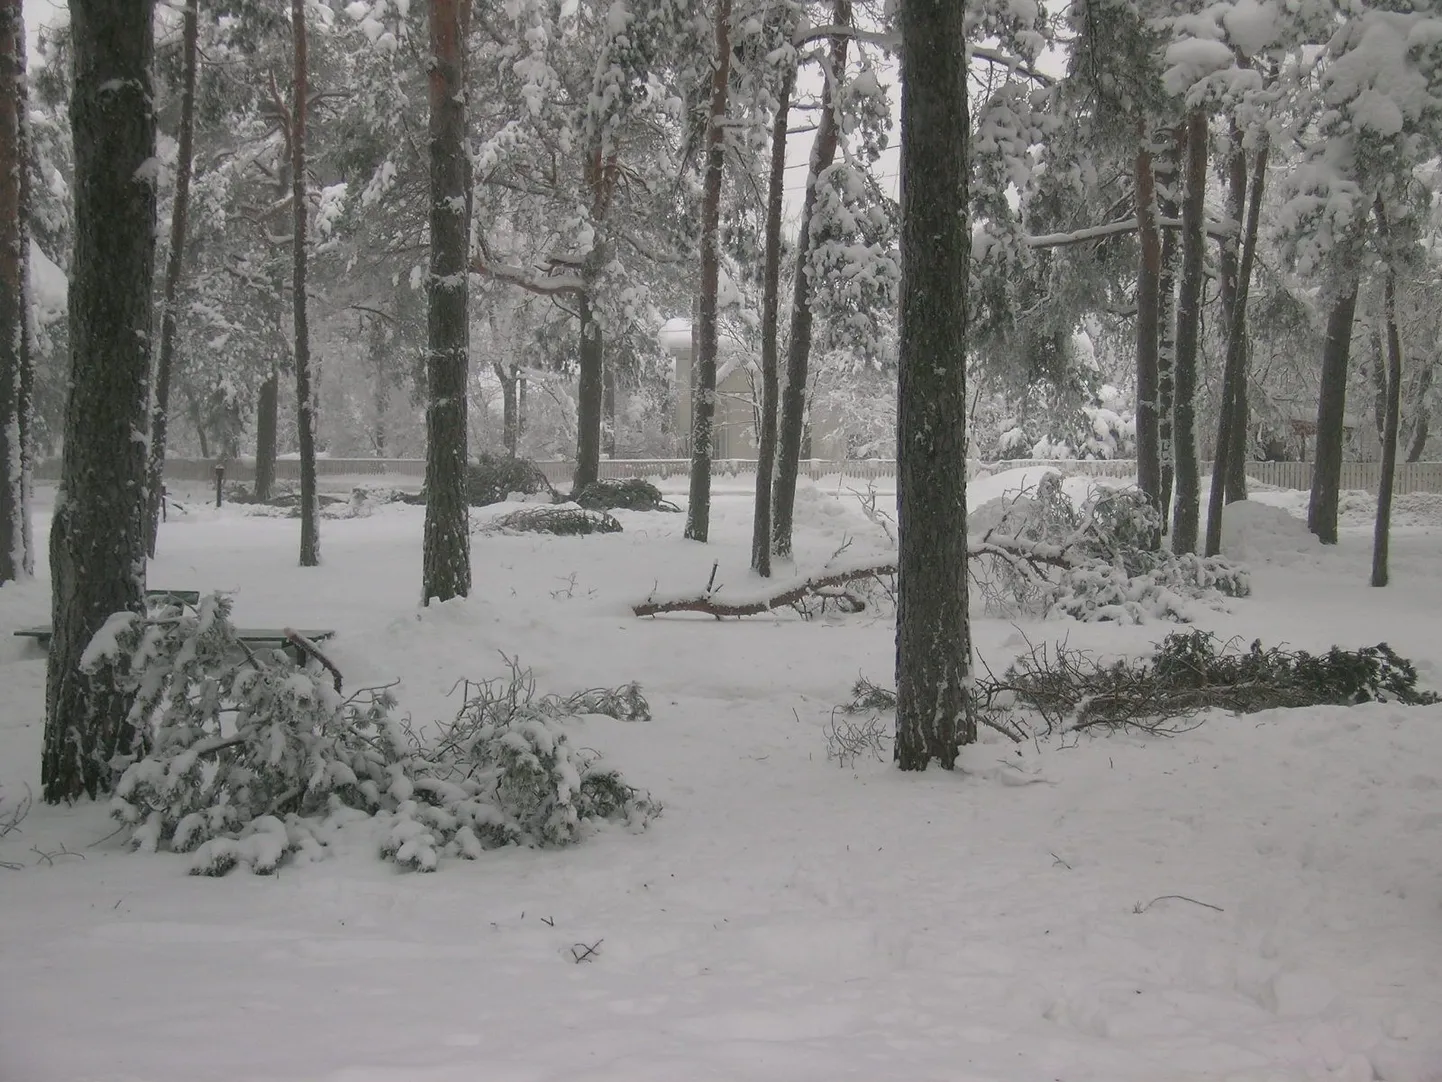 Lume raskuse alla muudunud puude oksad Nõmmel